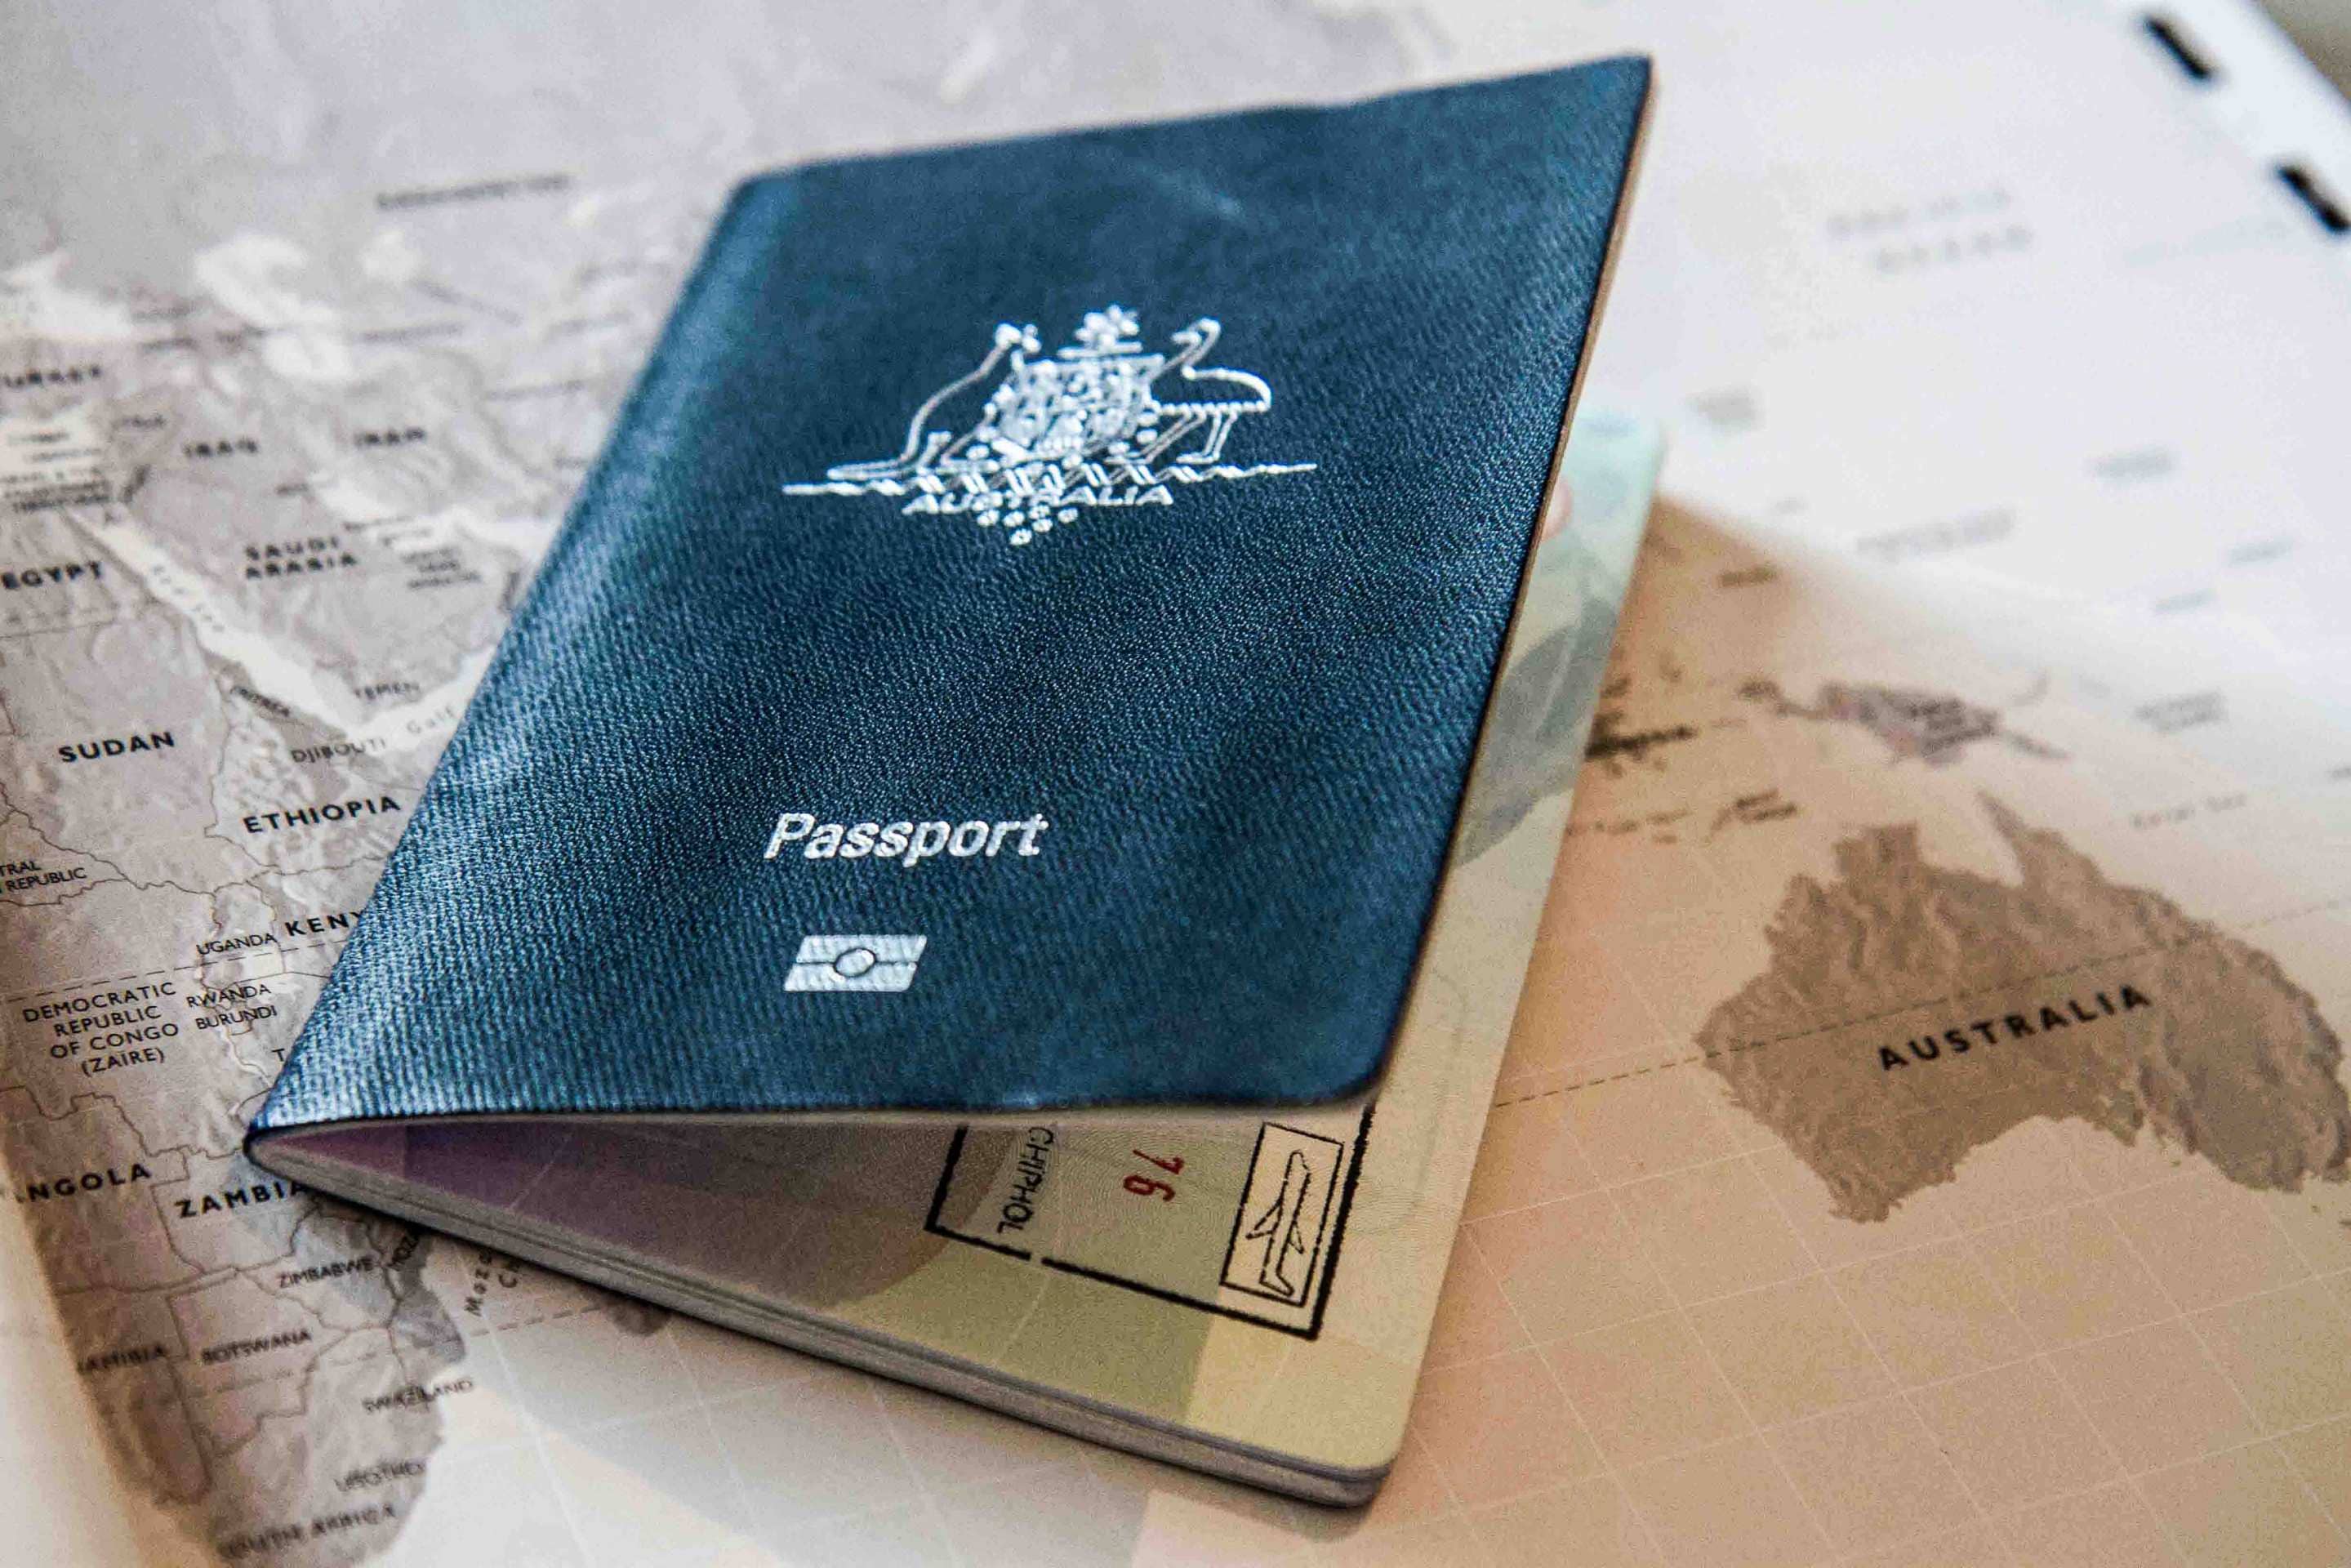 An Australian passport on a world map.